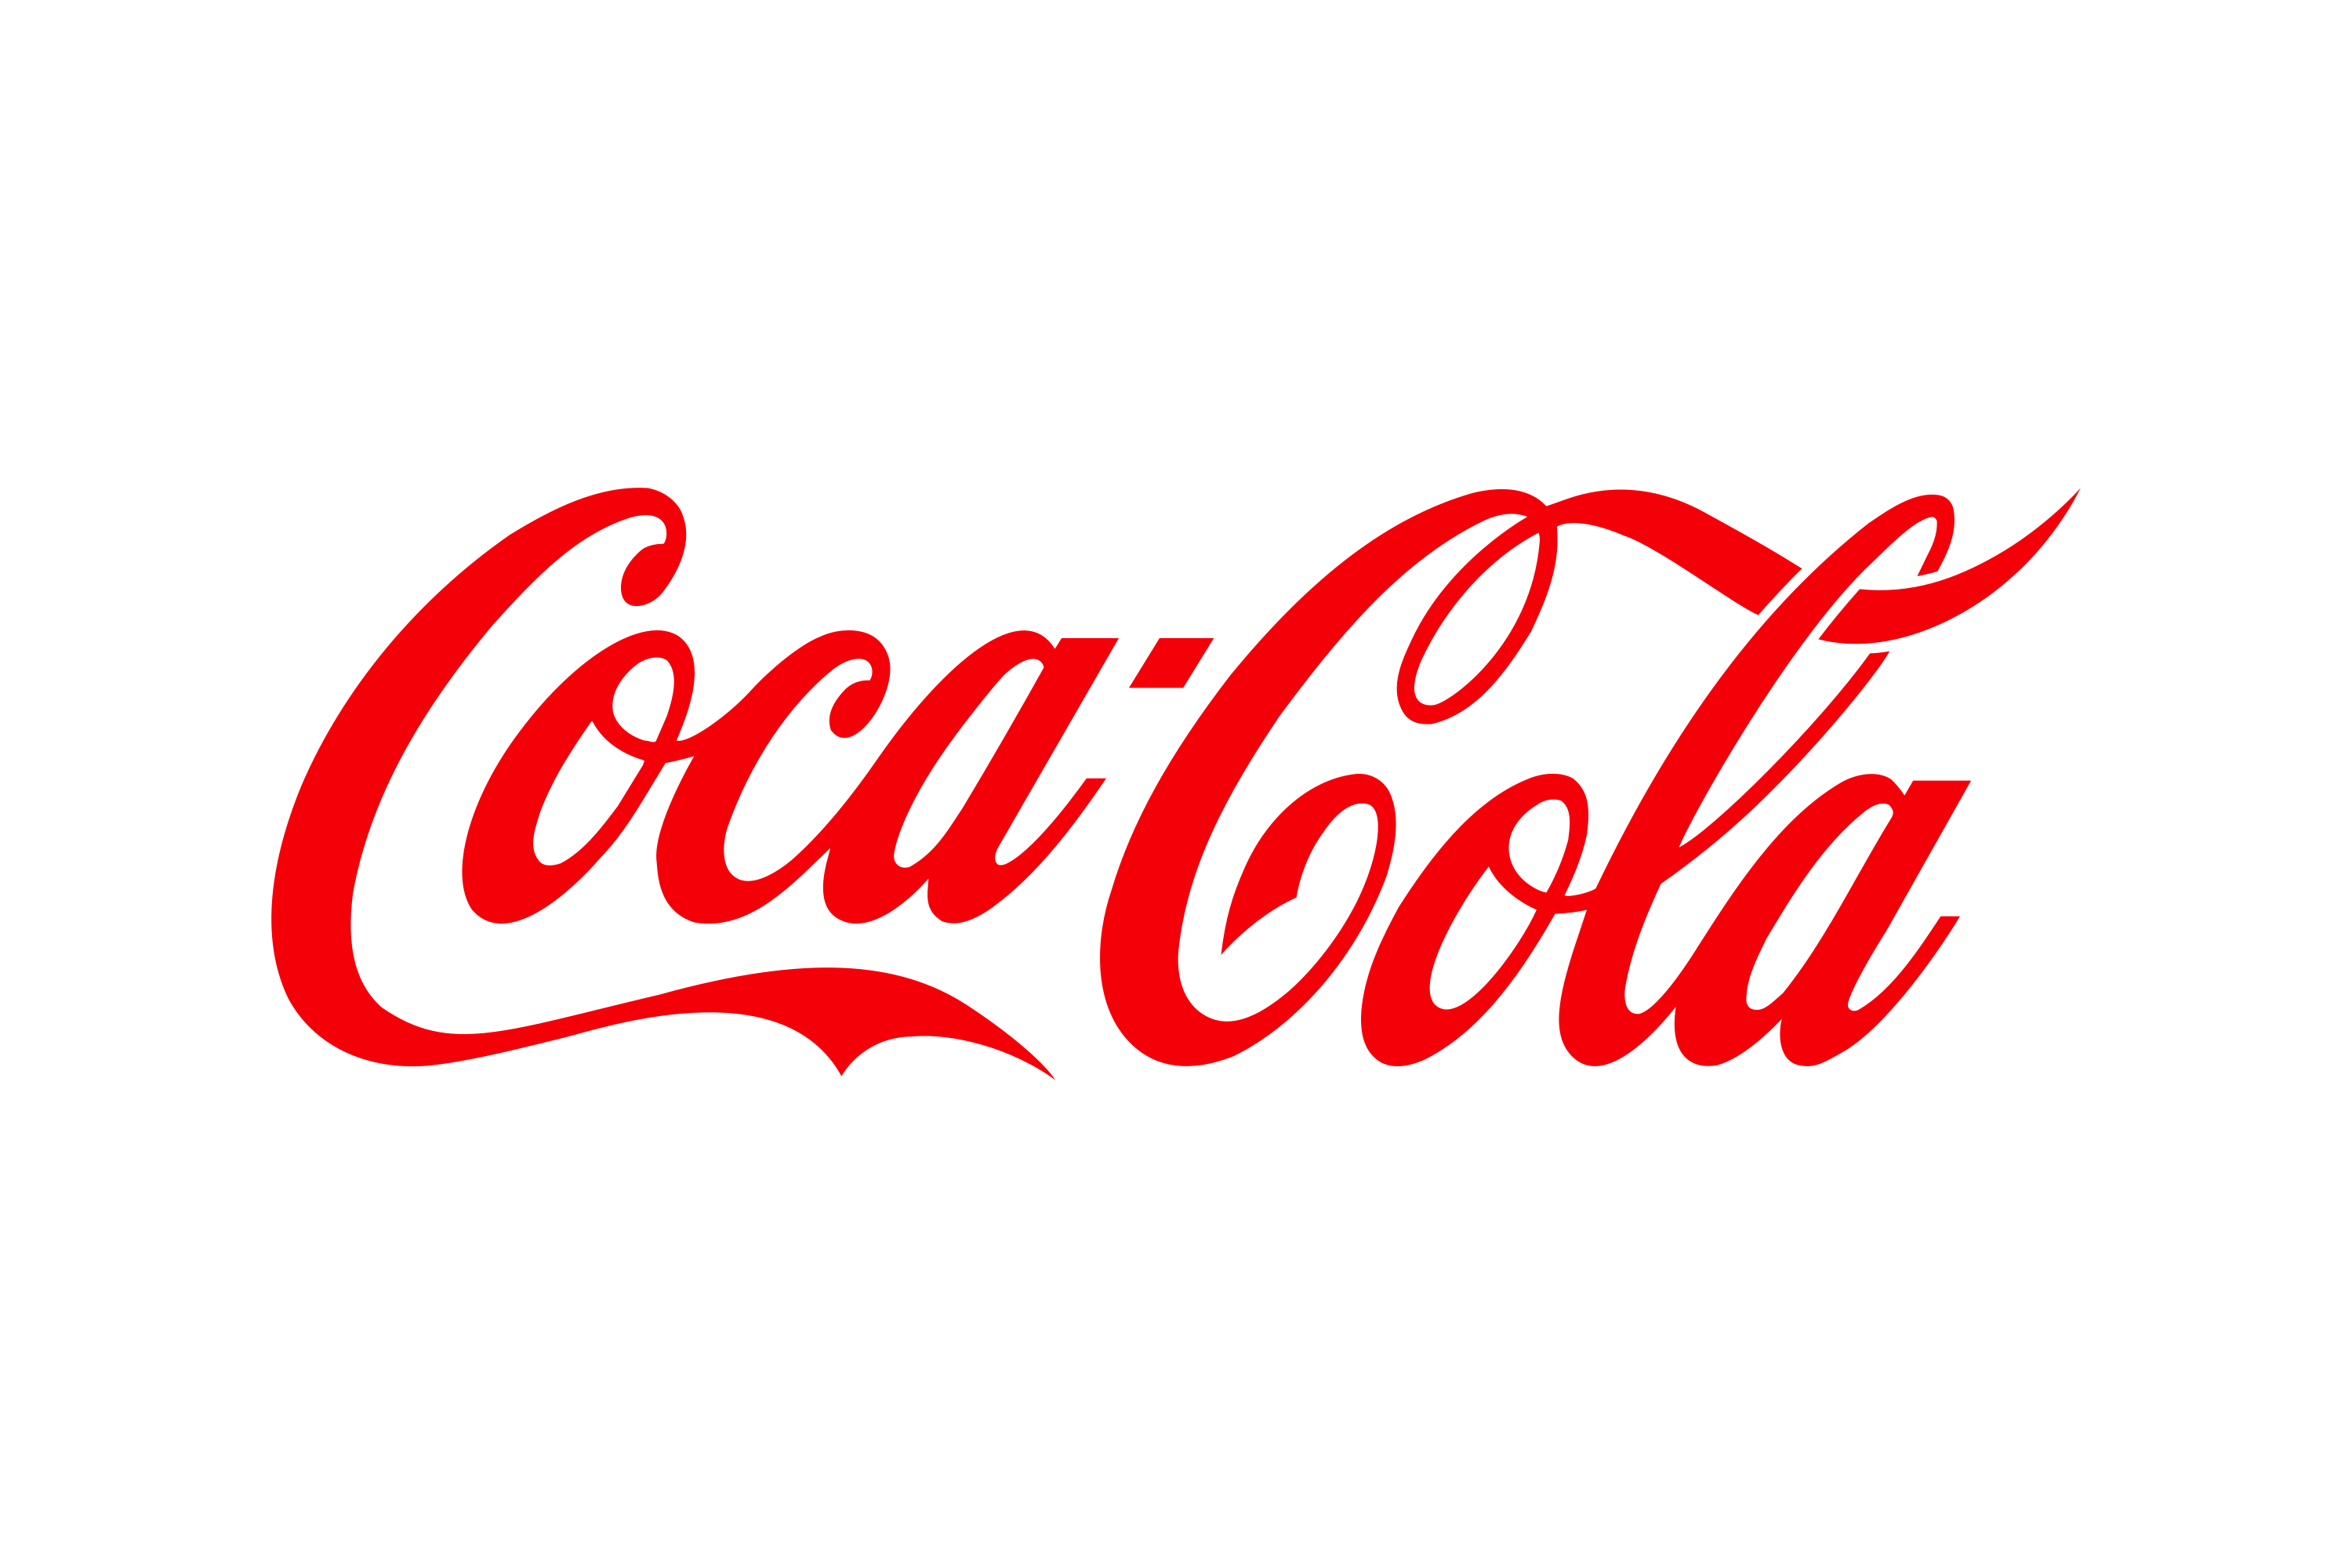 Coca Cola Logo PNG Images HD